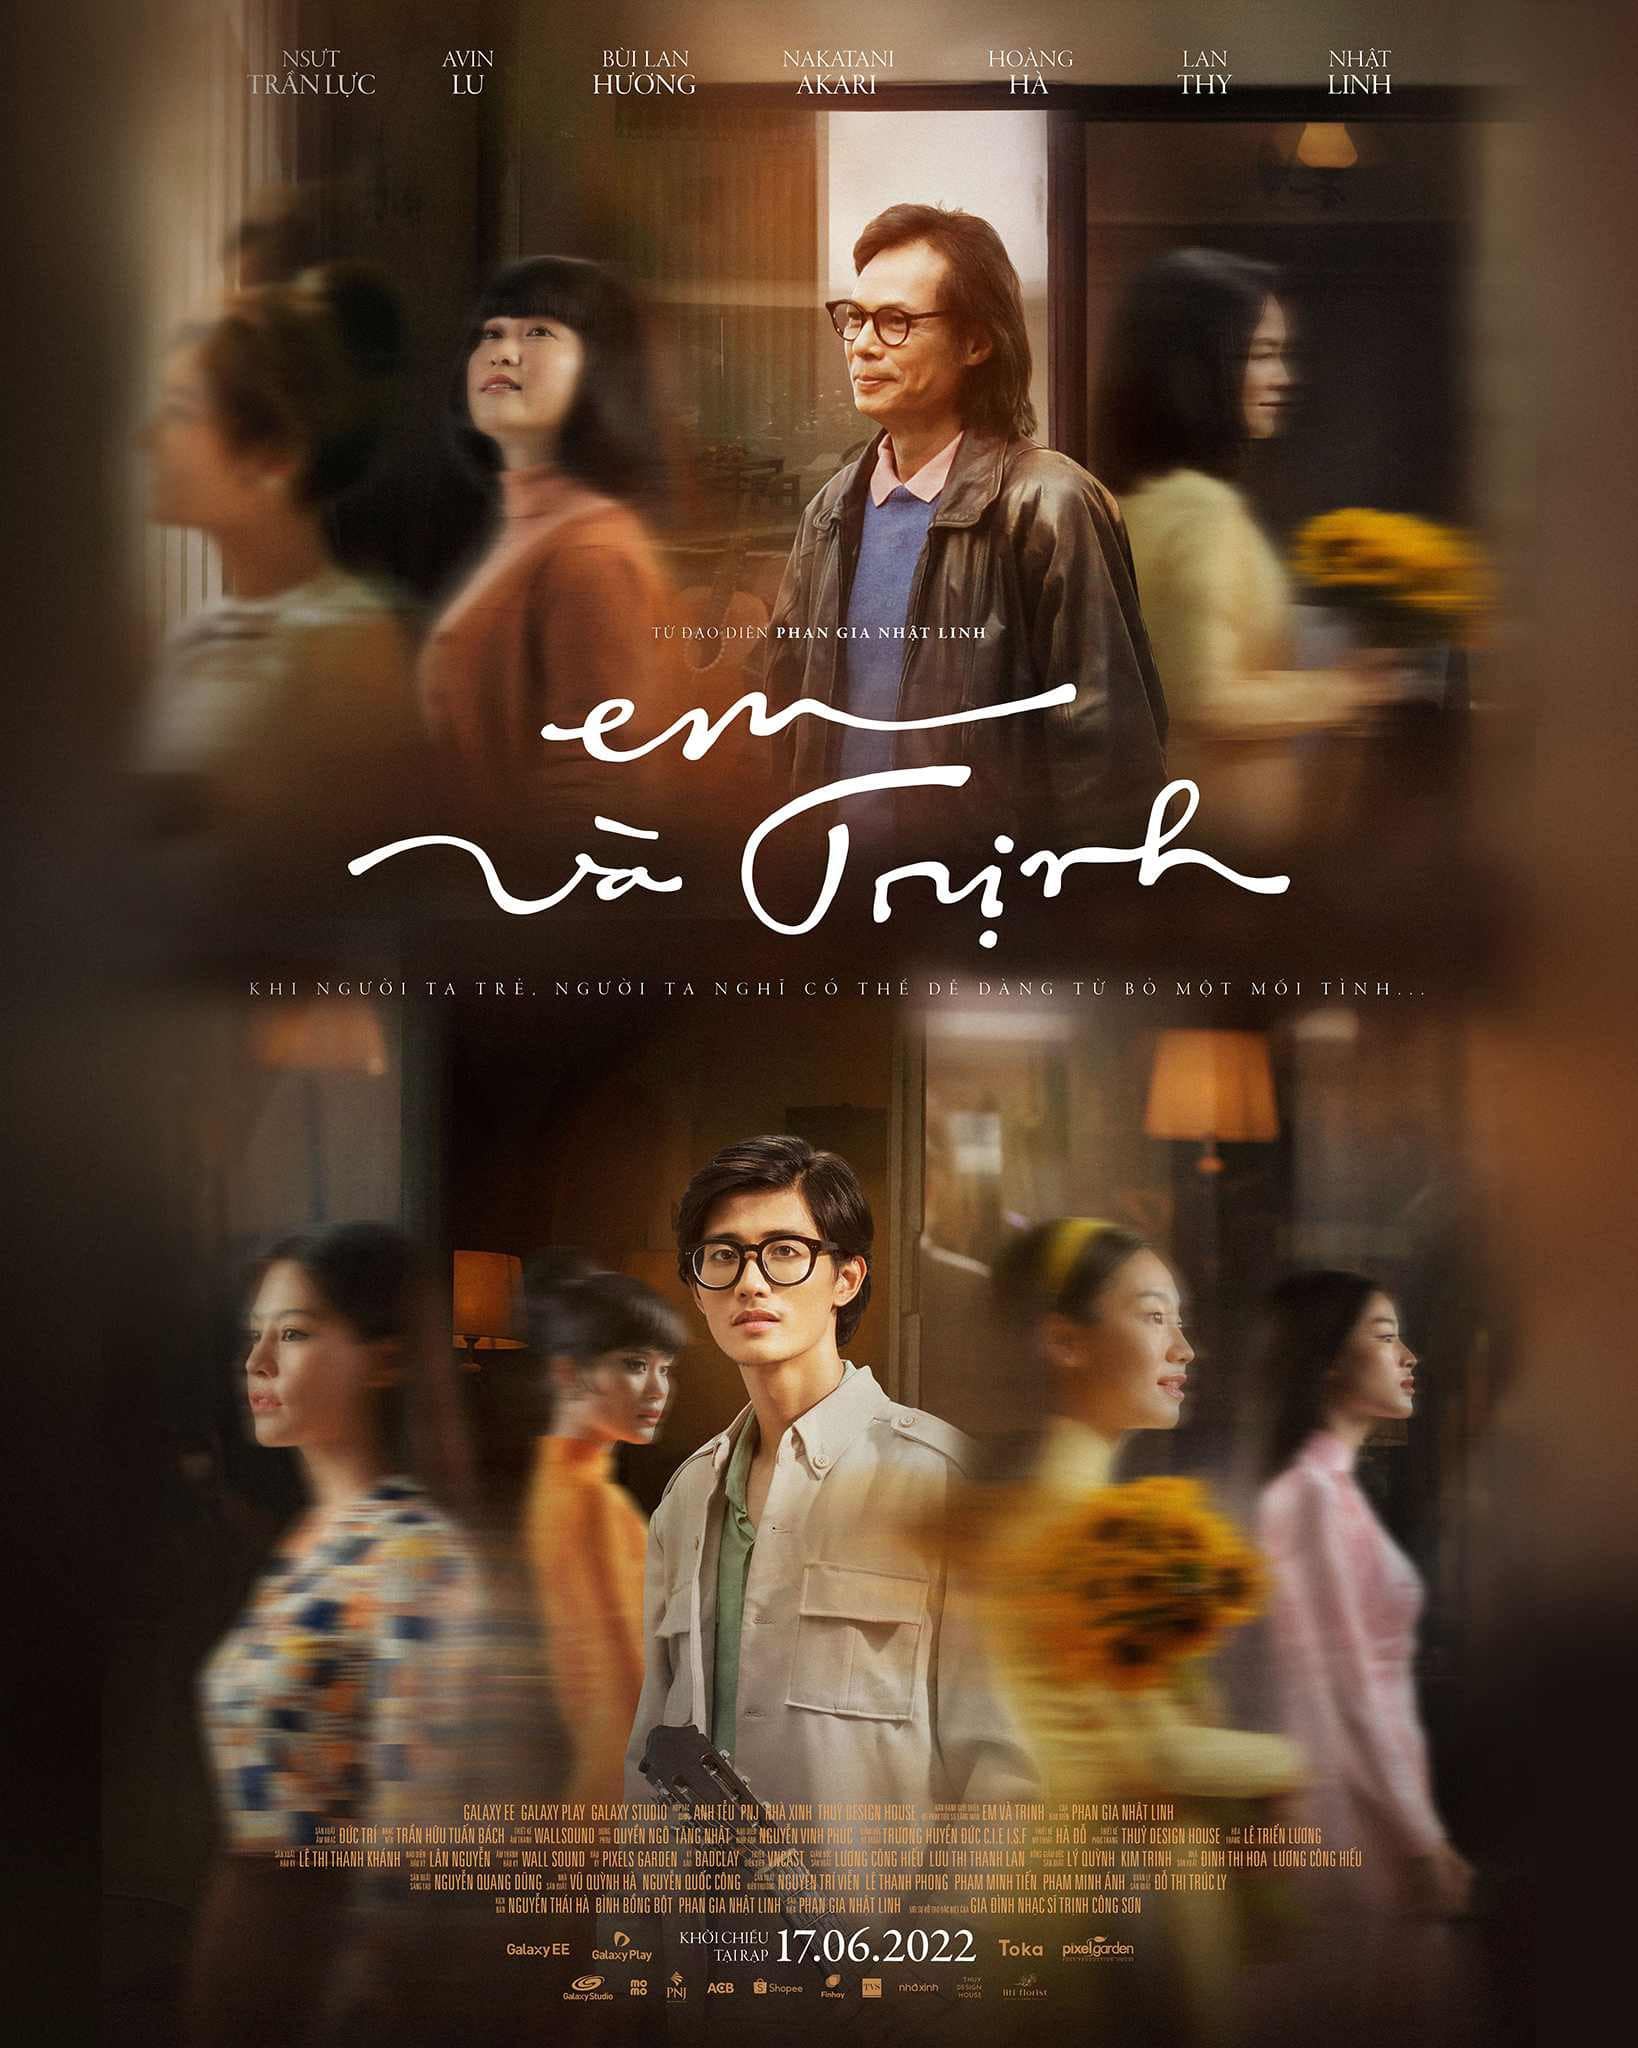 "Review phim Em và Trịnh": Bản Nhạc Tình Yêu Và Cuộc Đời Đầy Cảm Xúc